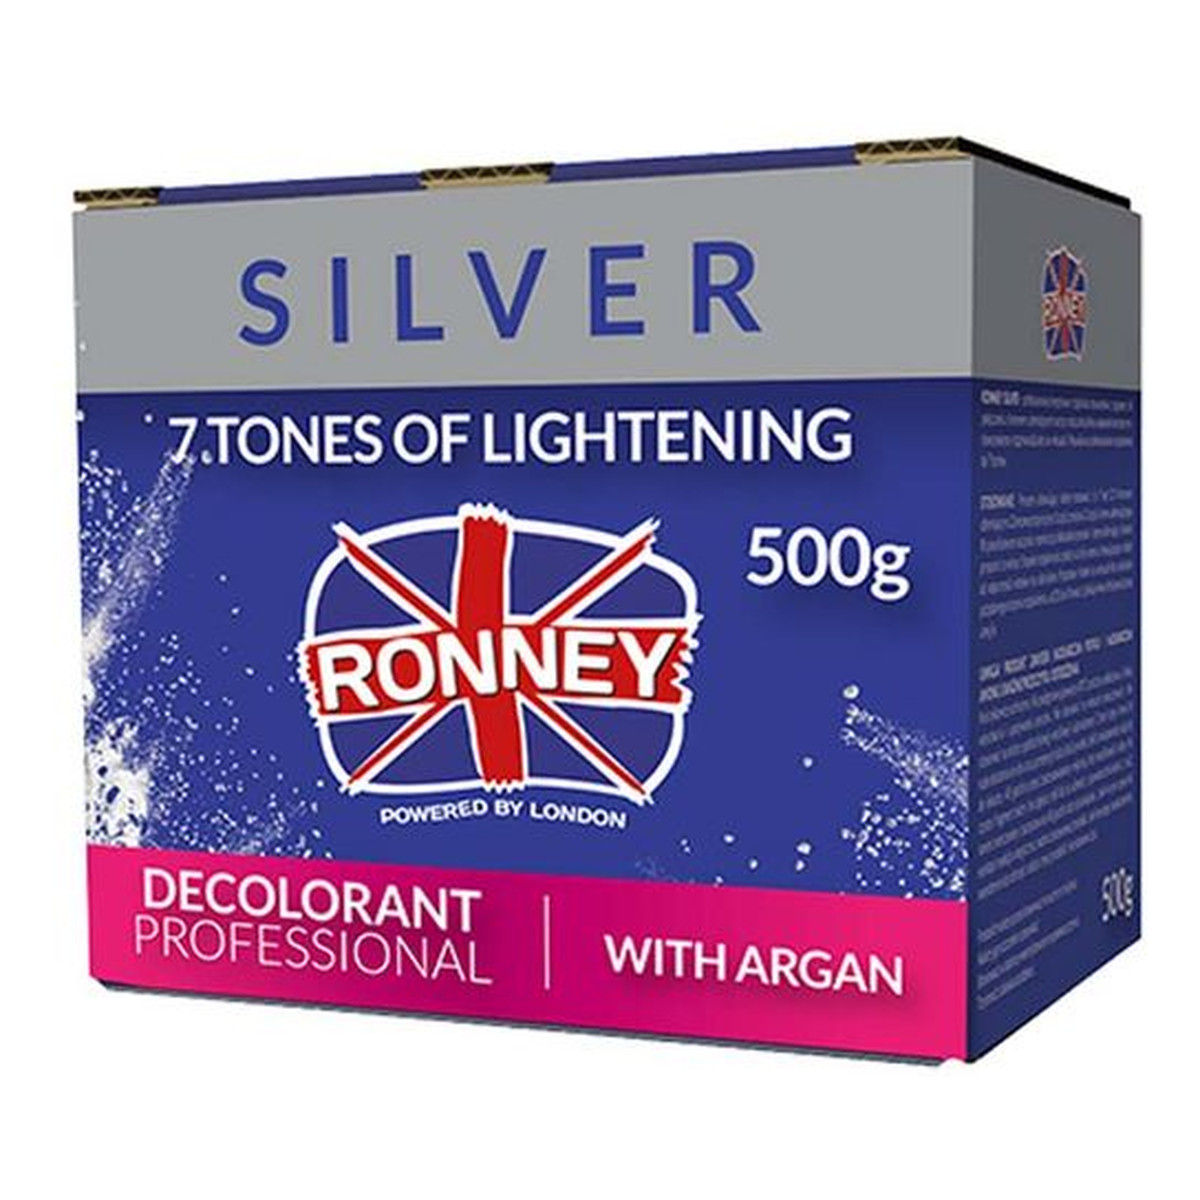 Ronney Professional decolorant with argan profesjonalny bezpyłowy rozjaśniacz do włosów z arganem 500g